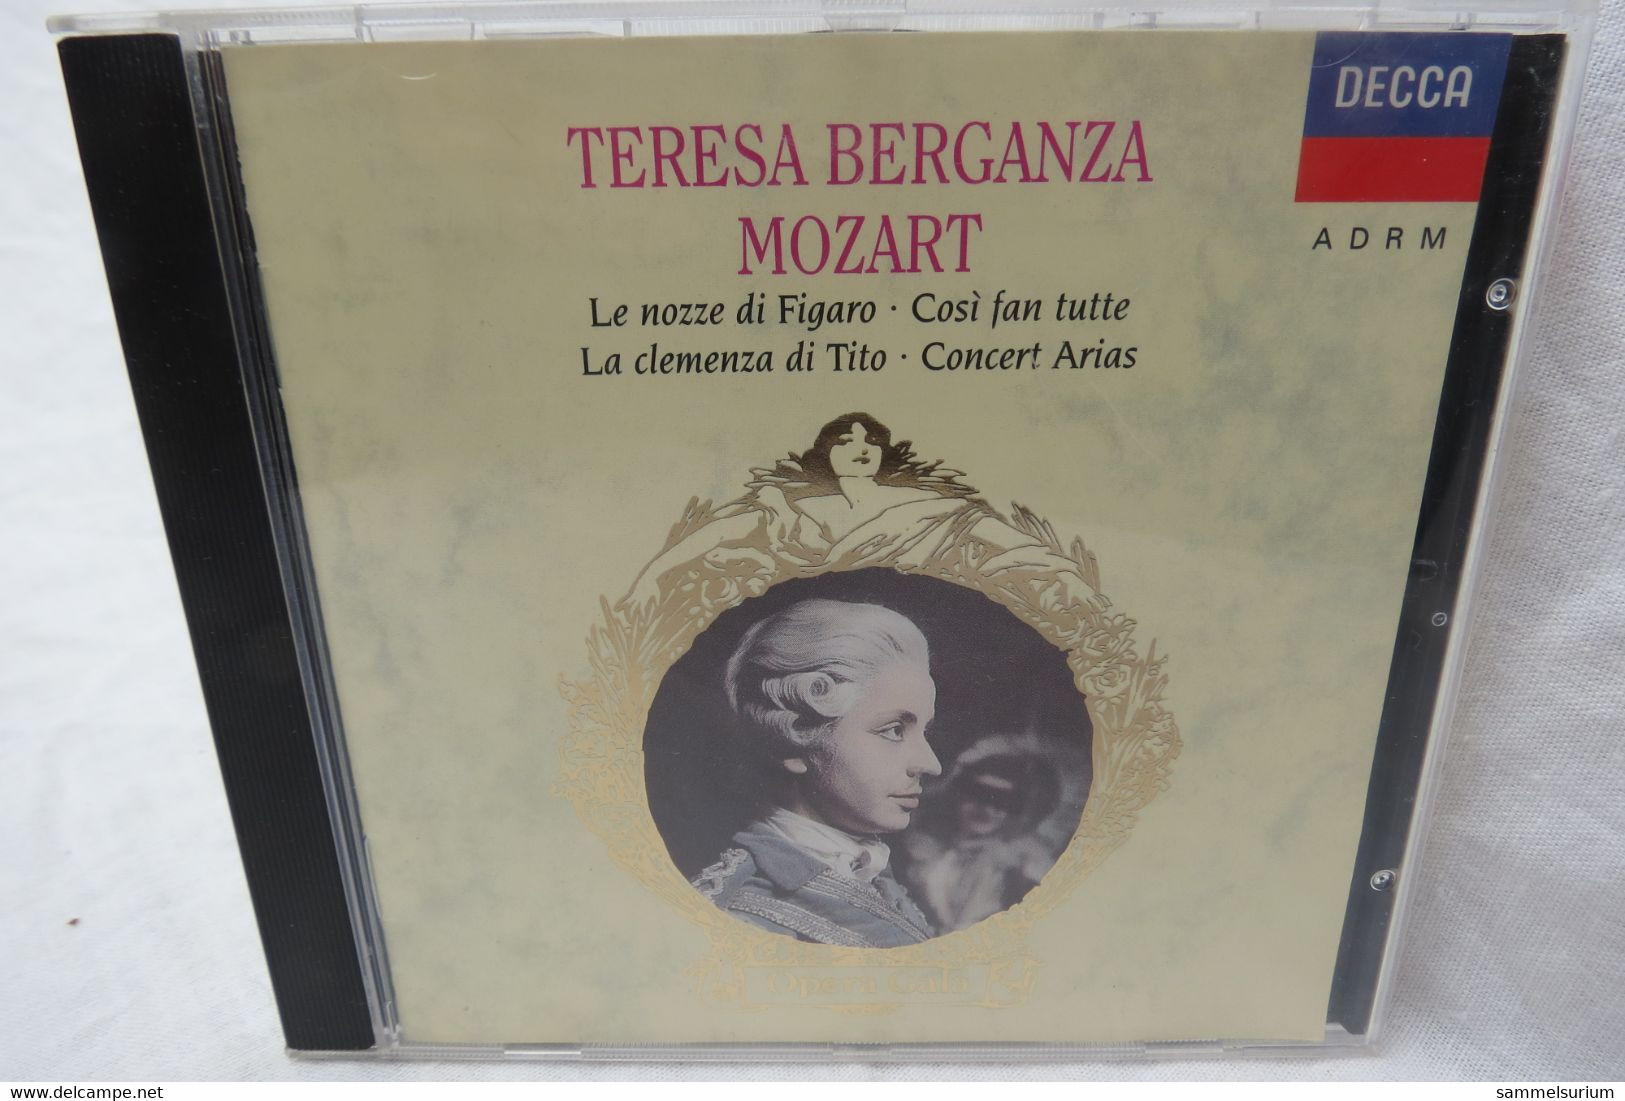 CD "Teresa Berganza" Mozart, Opern Gala - Oper & Operette